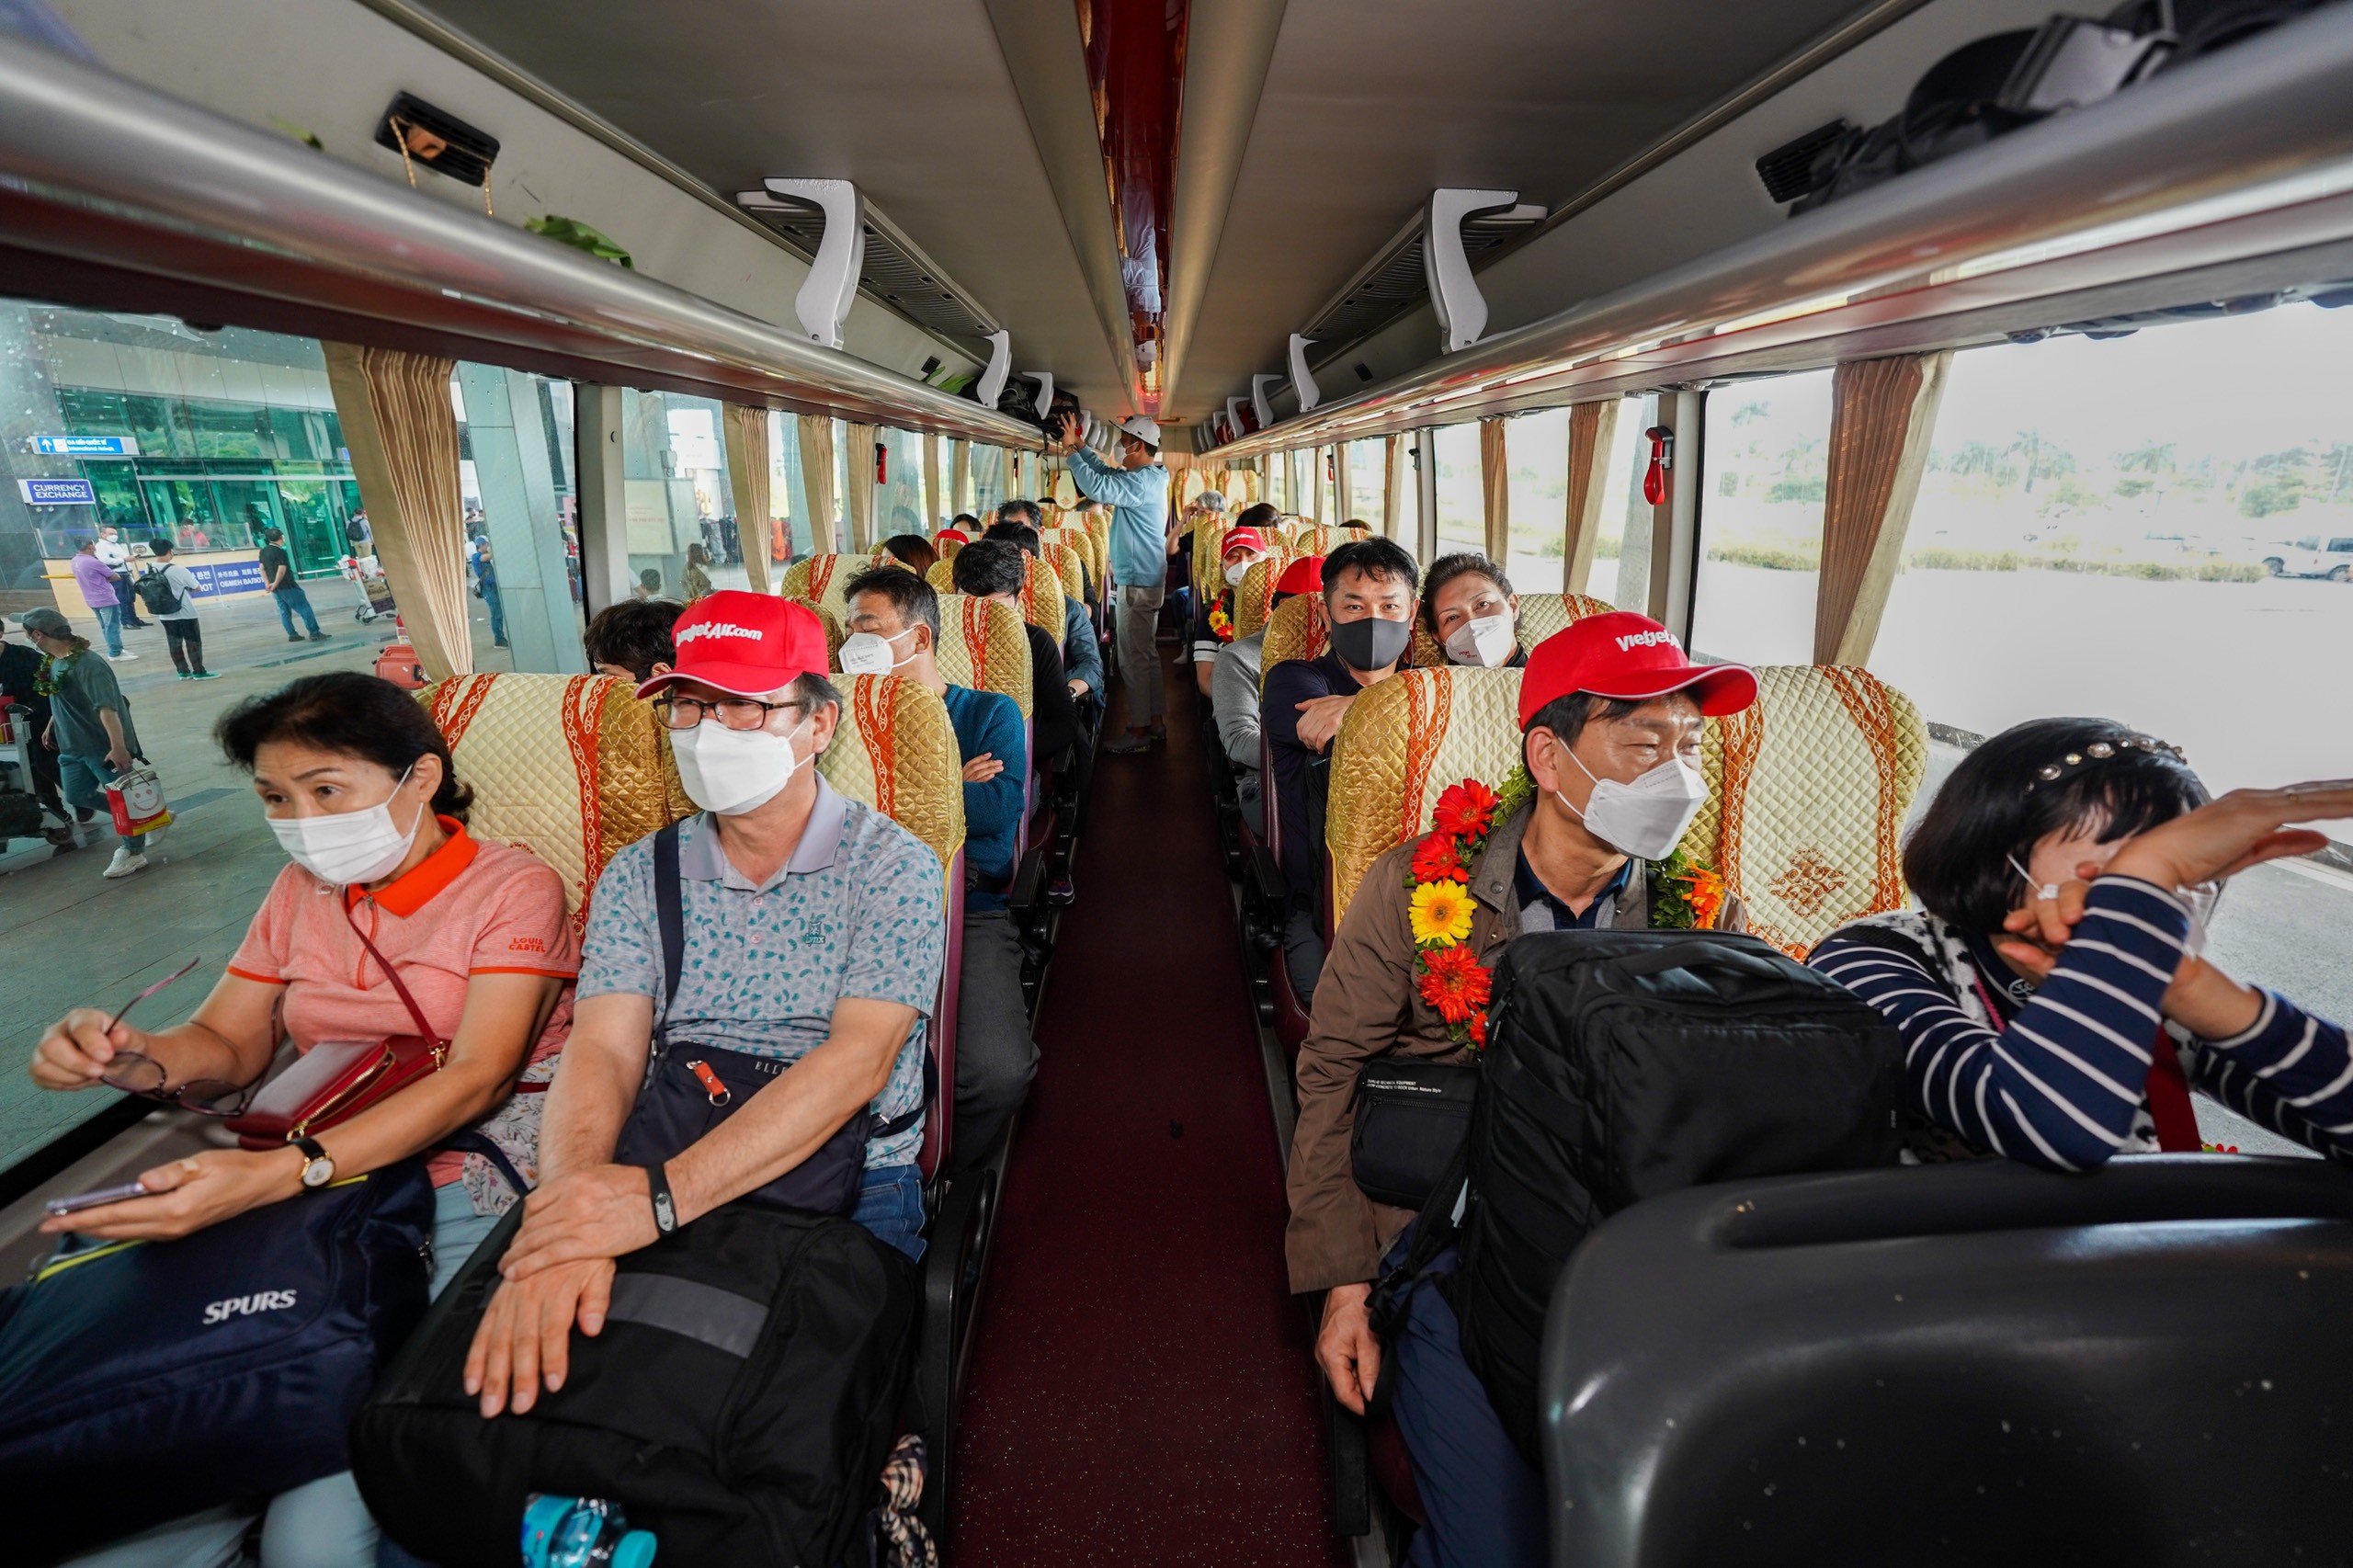 du khach ho chieu vaccine den Phu Quoc anh 8  - vj_phuquoc_zing_11 - Hơn 200 khách Hàn Quốc đến Phú Quốc sau dịch